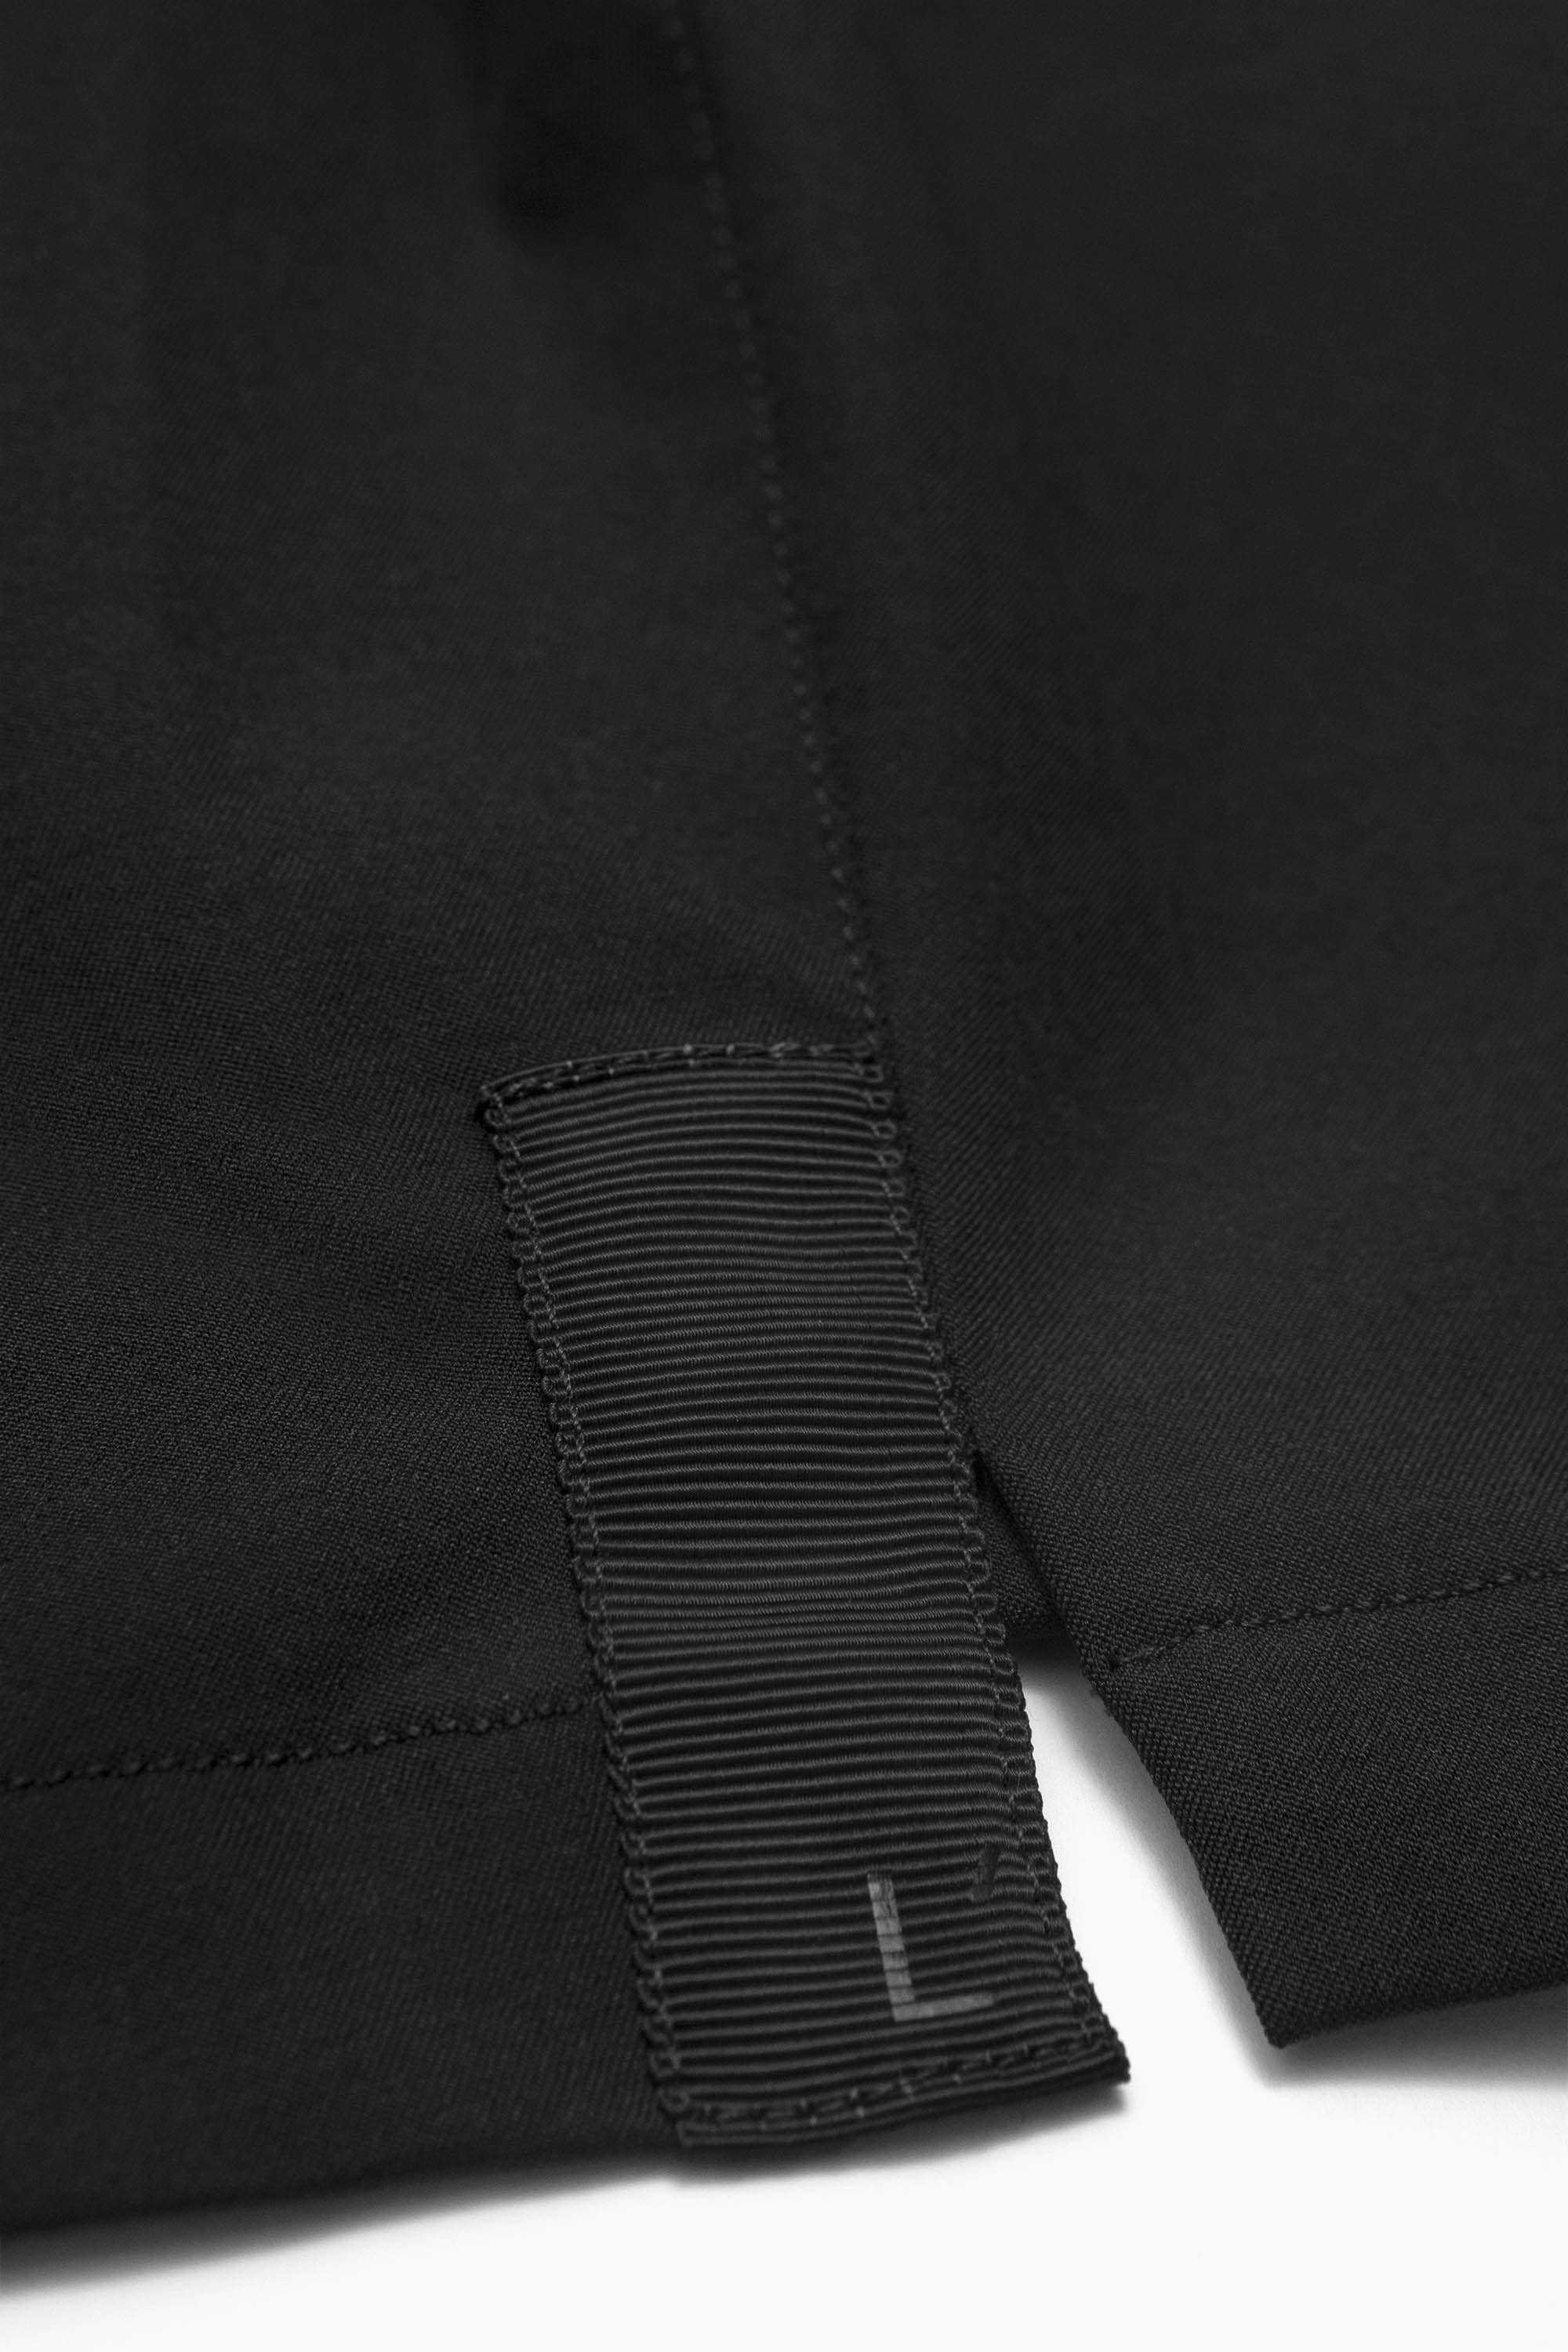 The Anywear Short 2.0 || Black | Recycled nylon without netting – LESTRANGE